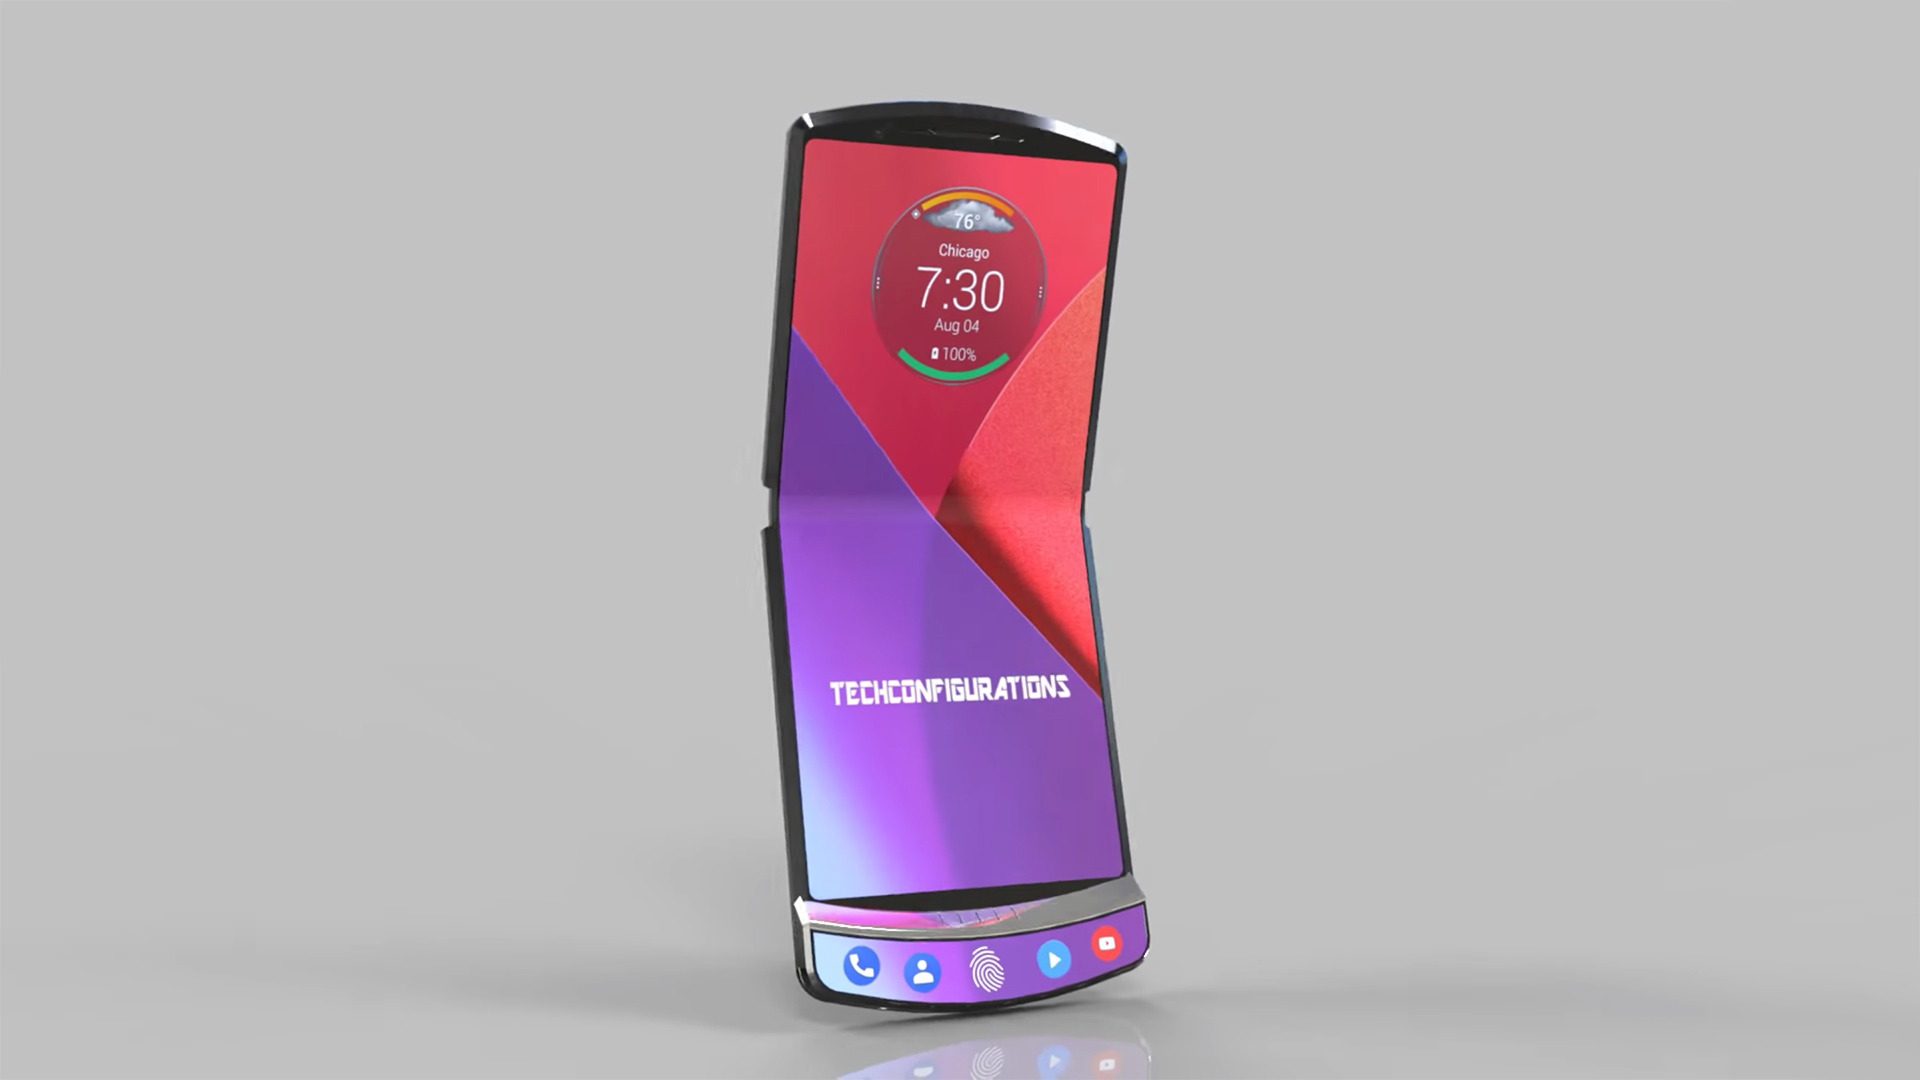  Раскрыты особенности Motorola RAZR Другие устройства  - samsung-should-be-careful-as-motorola-announces-razr-its-own-folding-phone